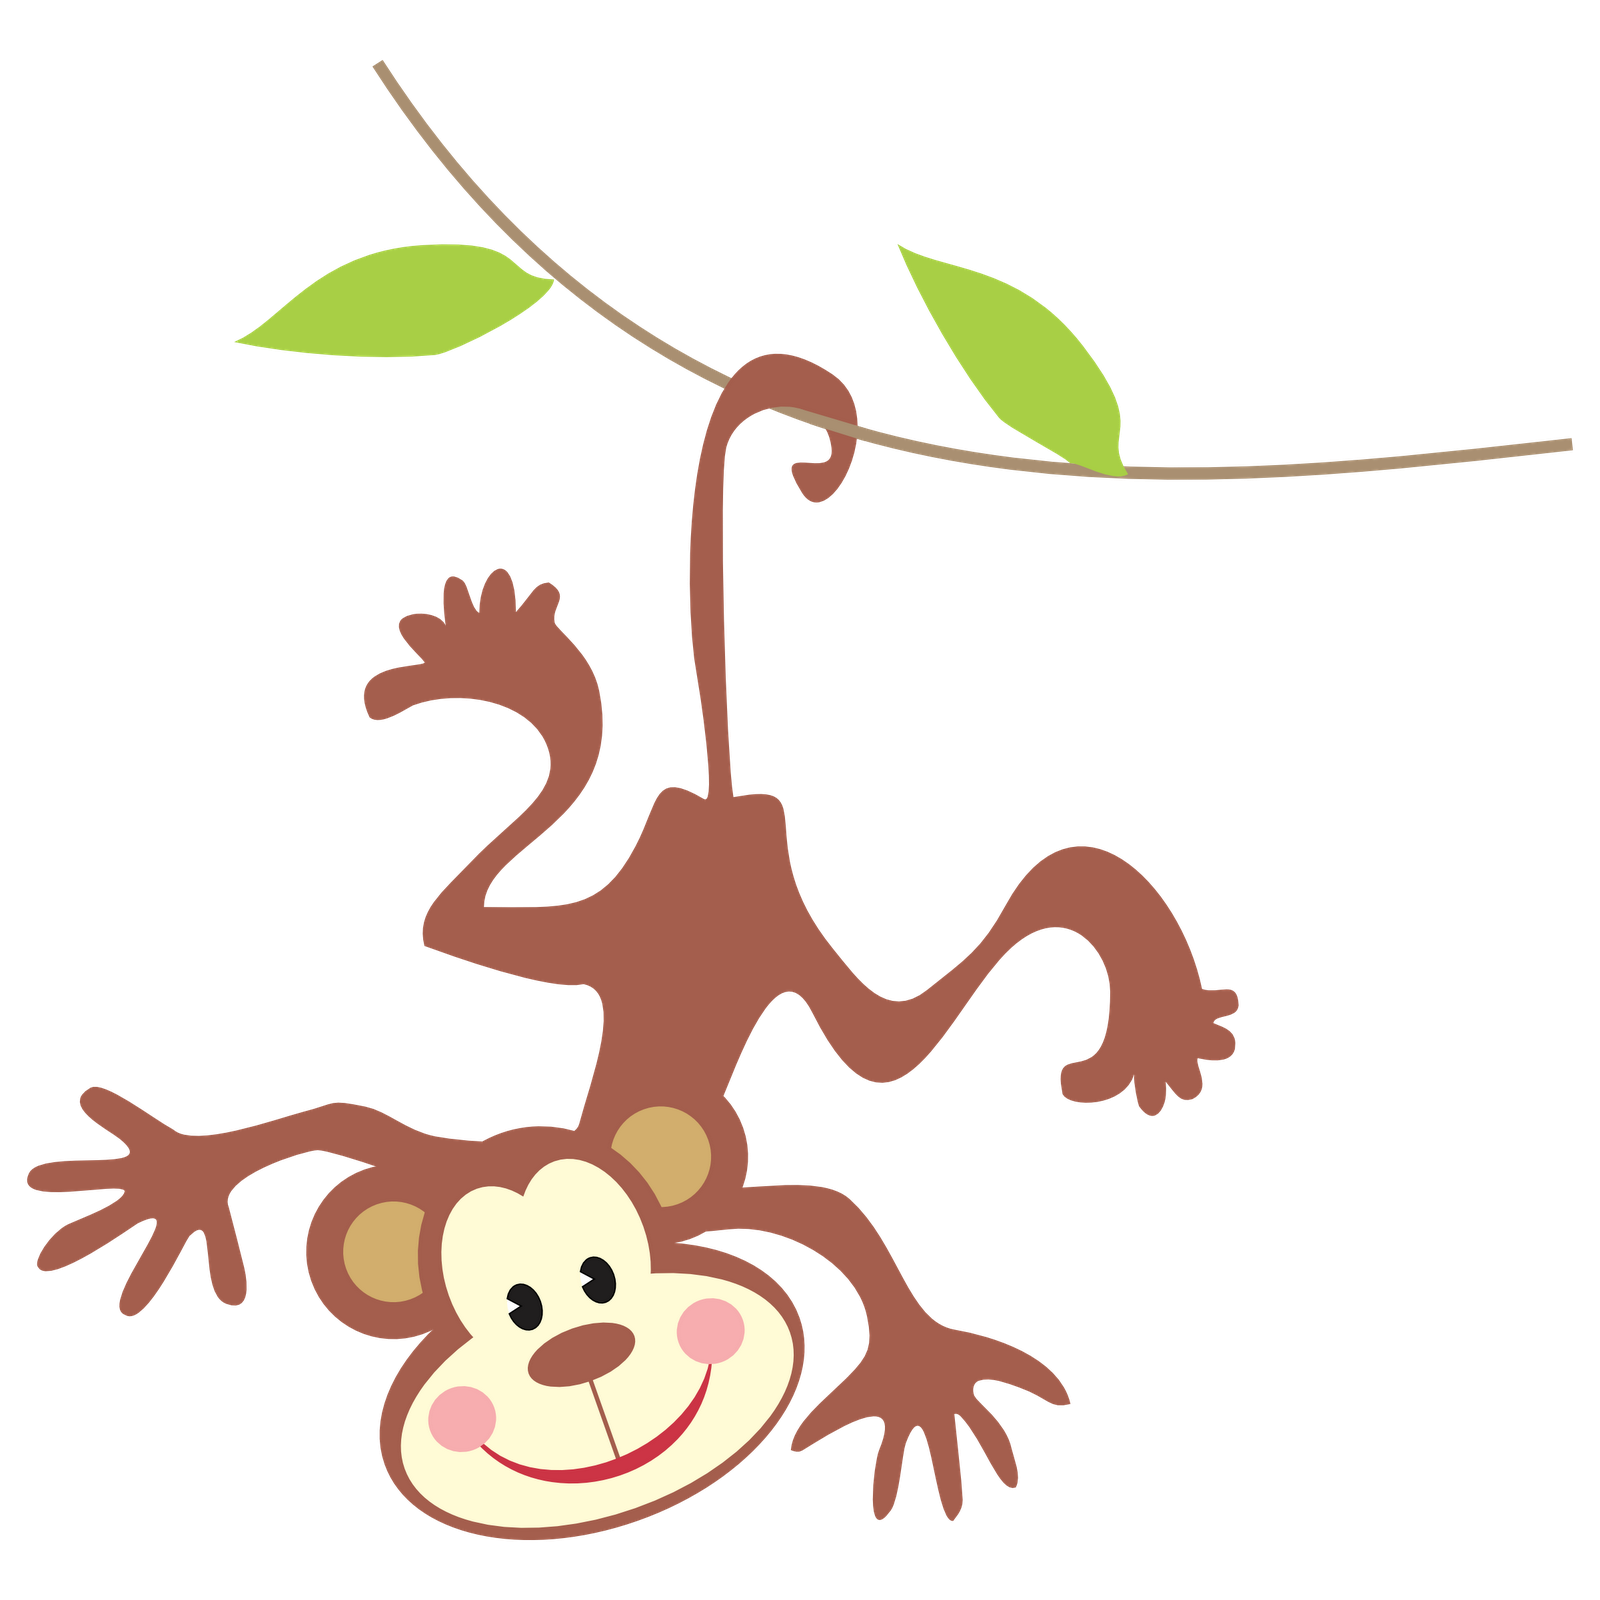 Monkey tree free clipart